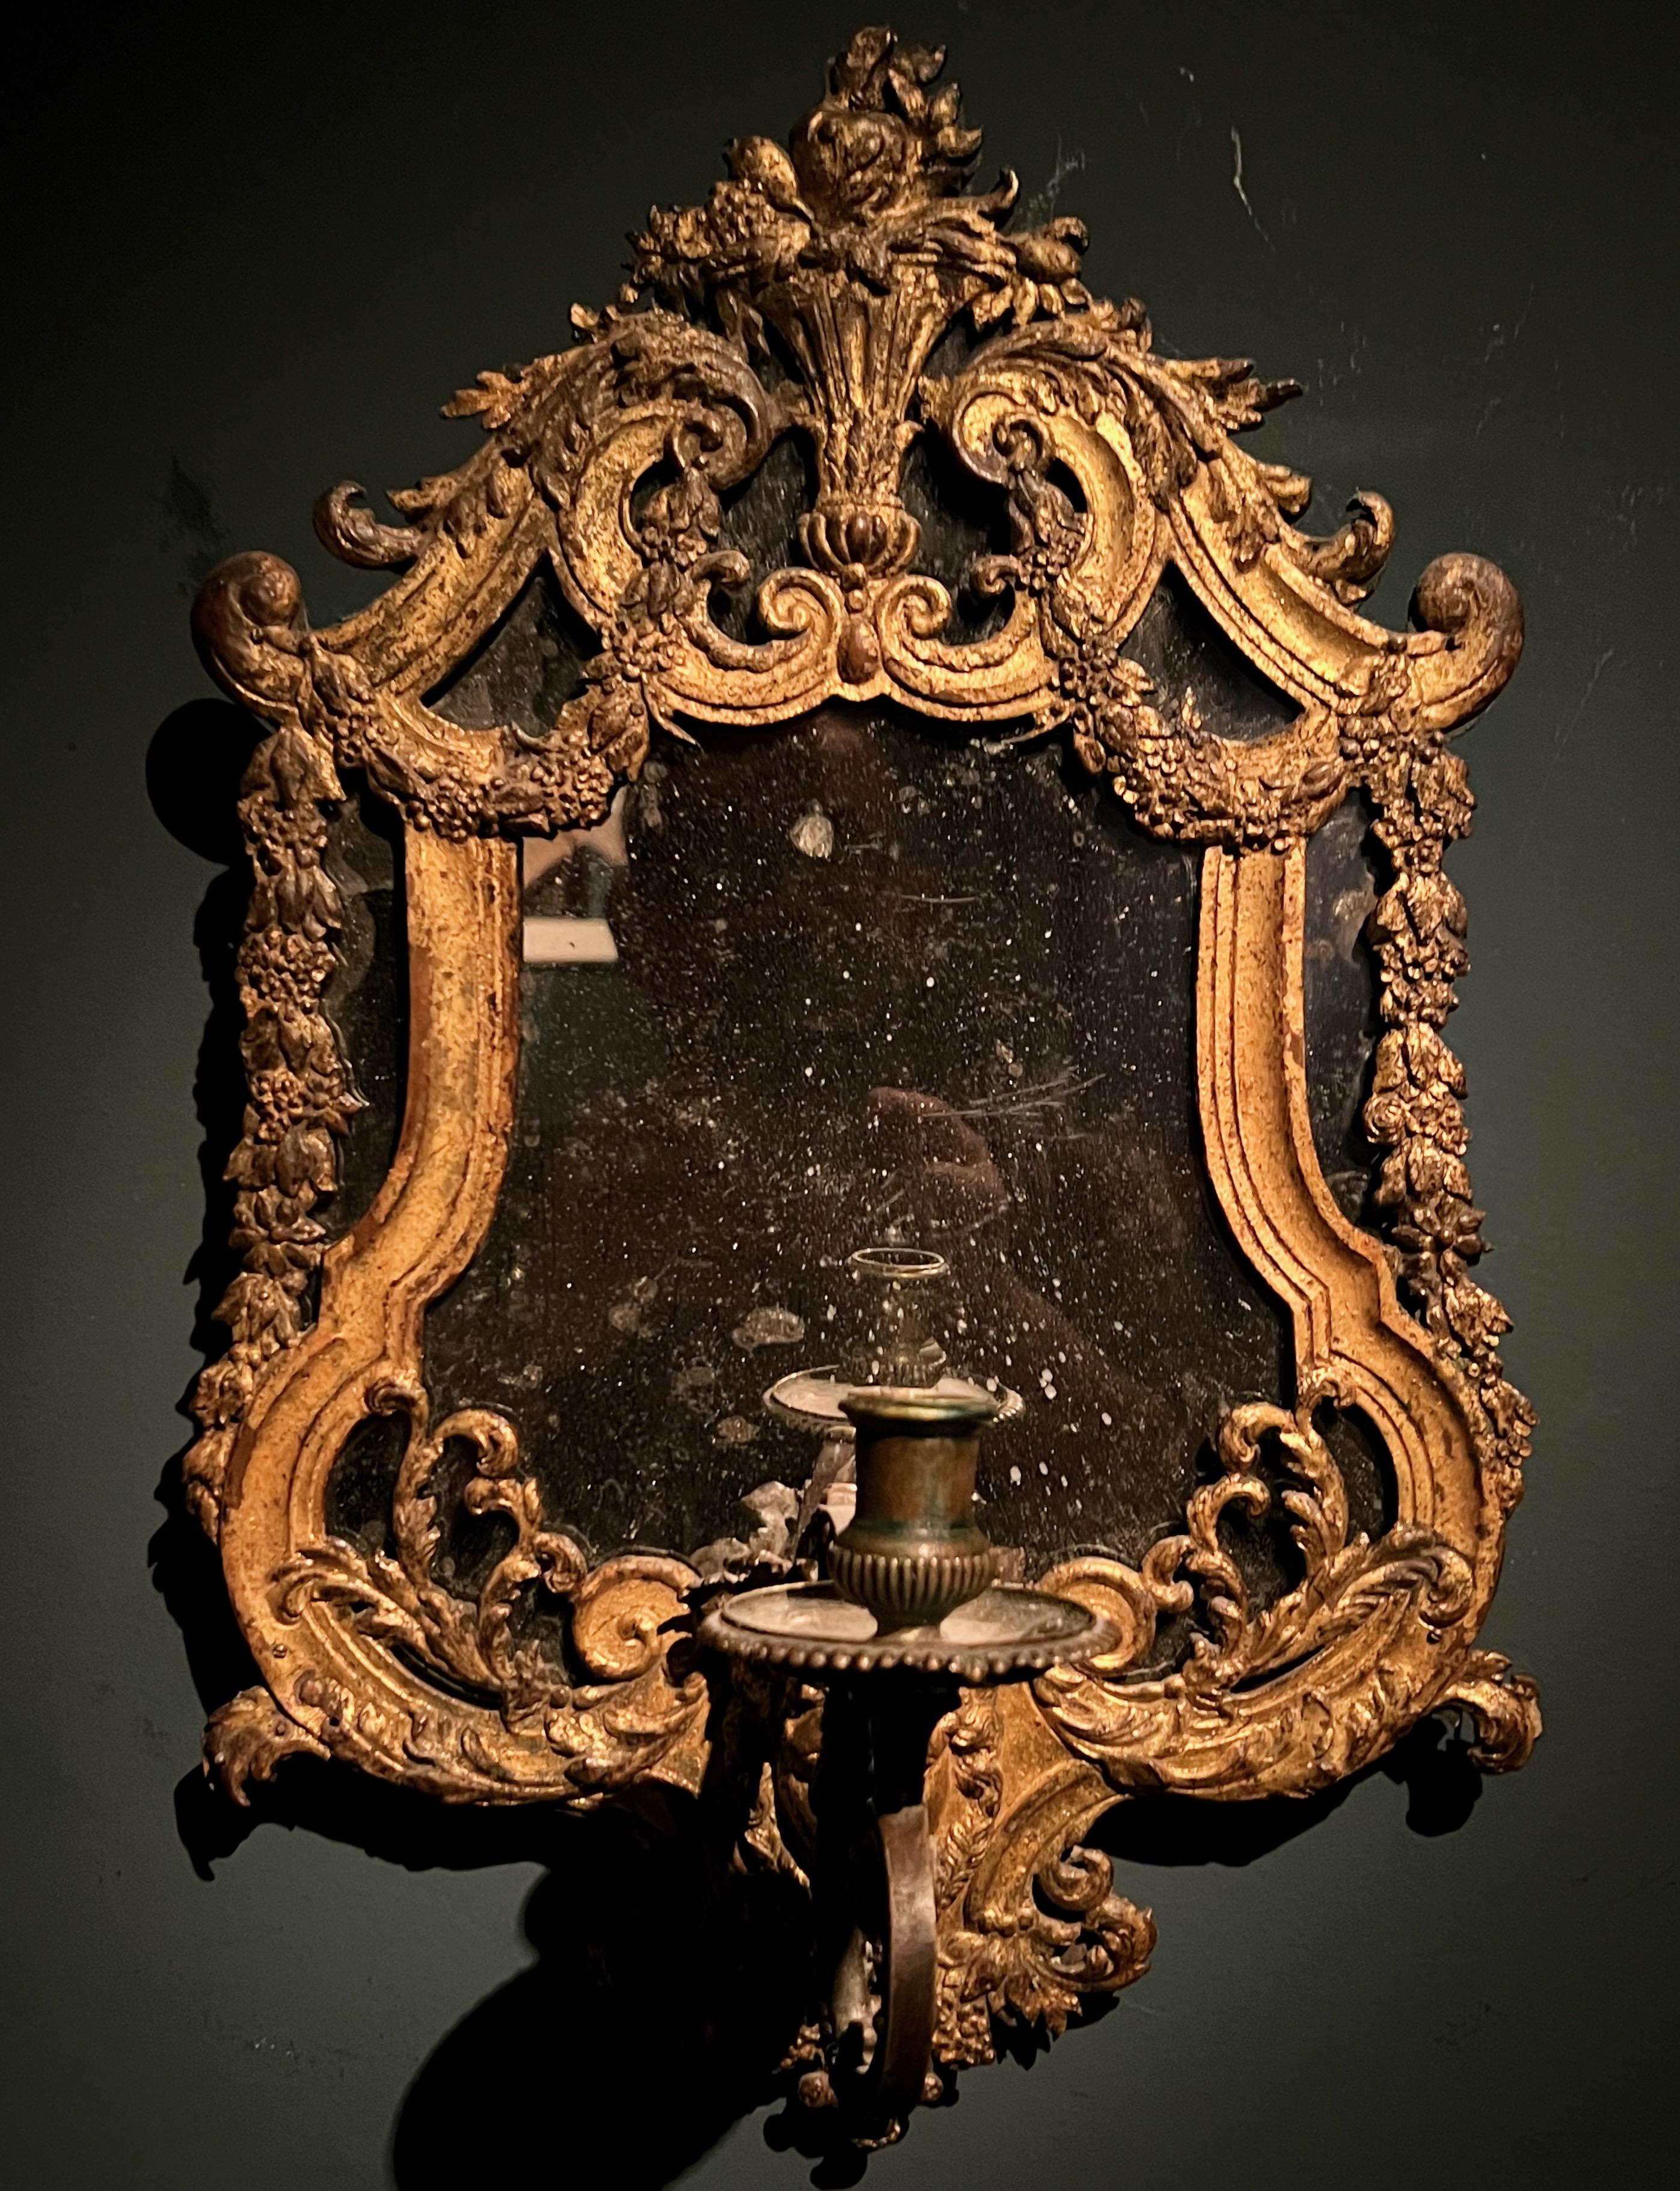 Un très charmant miroir du début du 18e siècle avec un cadre en plomb doré et un bras de bougie en bronze. Le décor en plomb moulé et doré est monté sur une base en bois. Cette applique murale à miroir est probablement suédoise et provient des